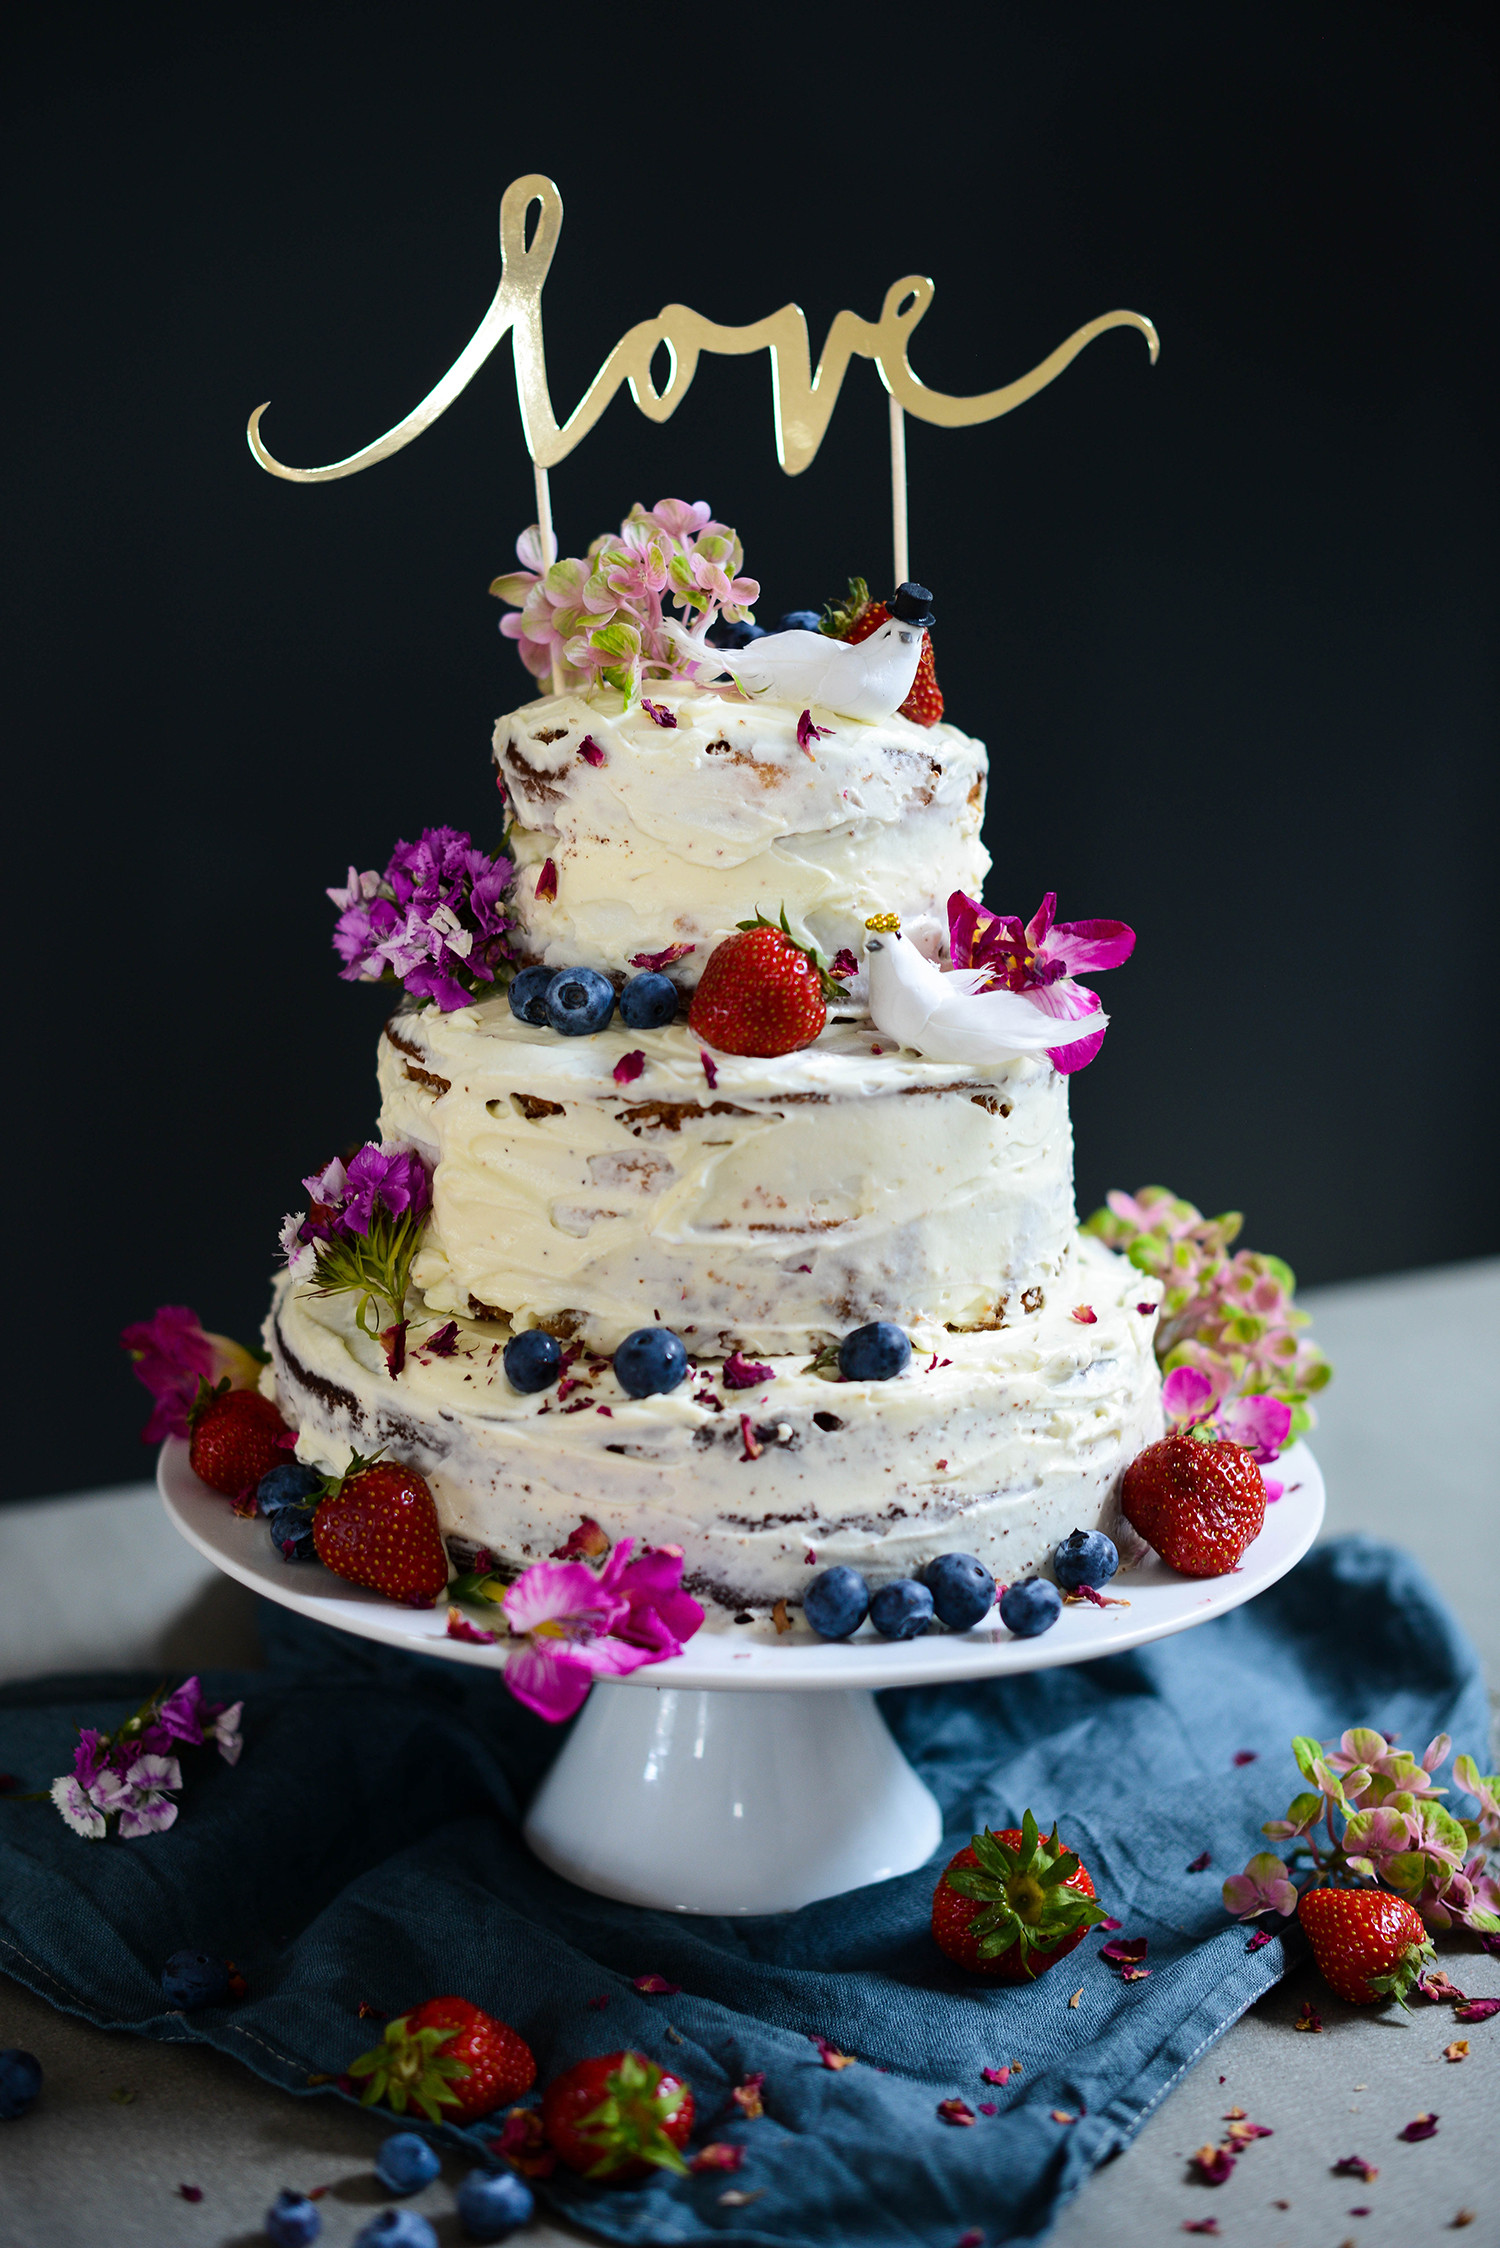 Layered Wedding Cakes
 Three layered wedding cake with mascarpone frosting